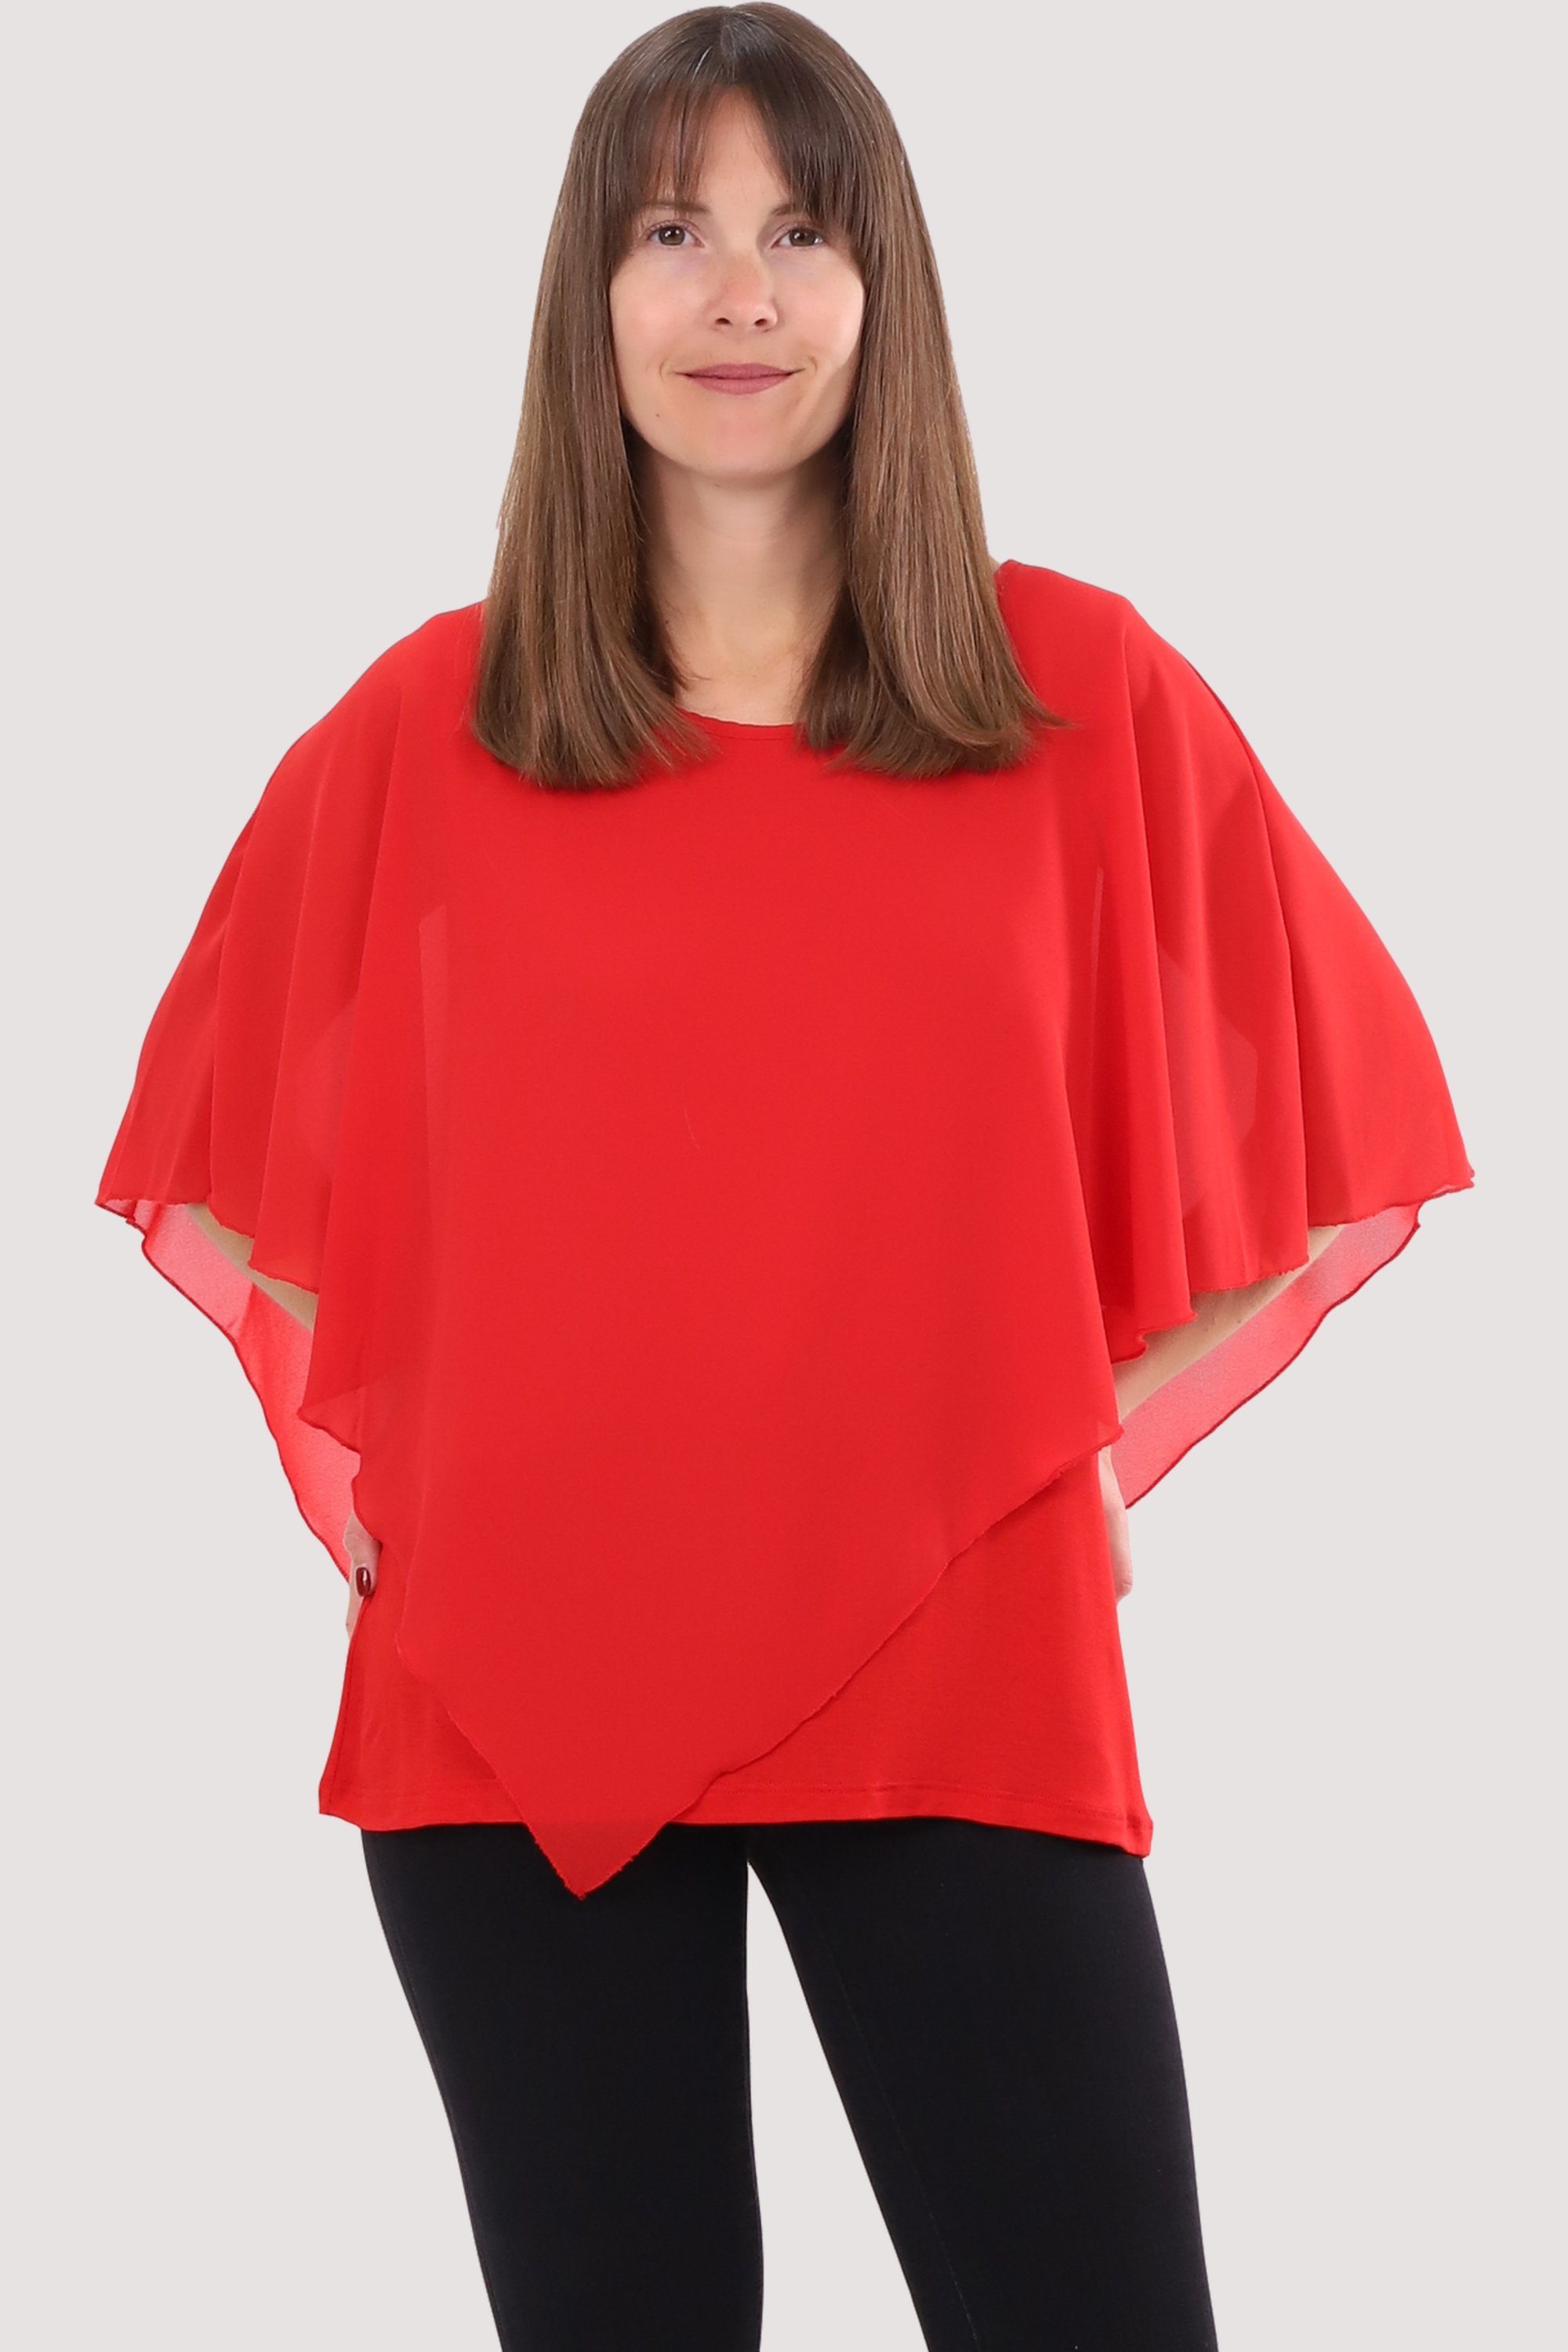 malito more than fashion Chiffonbluse 10732 Schlupfbluse Blusenshirt asymmetrisch geschnitten Einheitsgröße rot